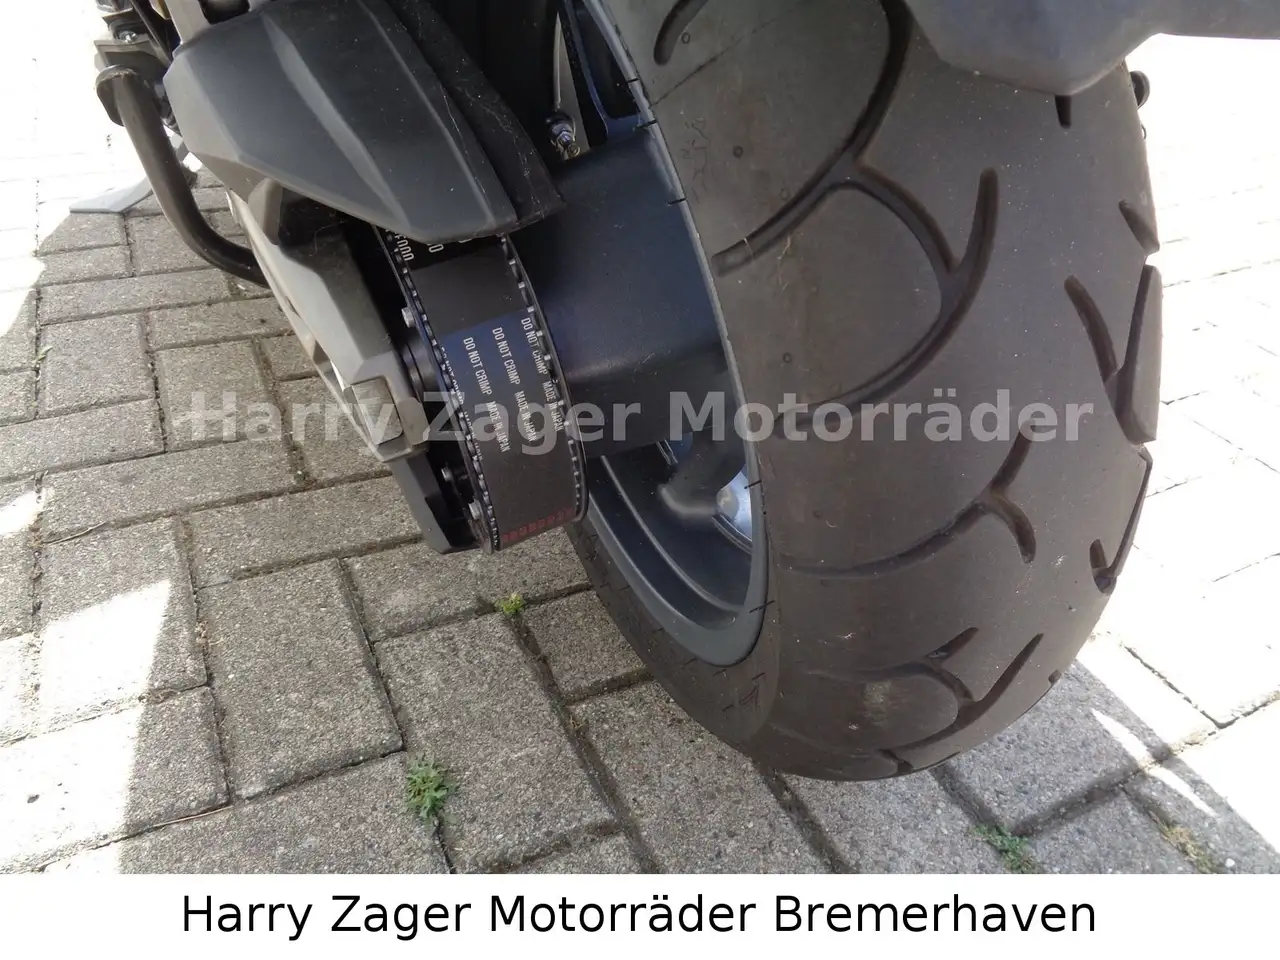 Kymco AK 550 Roller/Scooter in Silber gebraucht in Bremerhaven für € 6.990,-